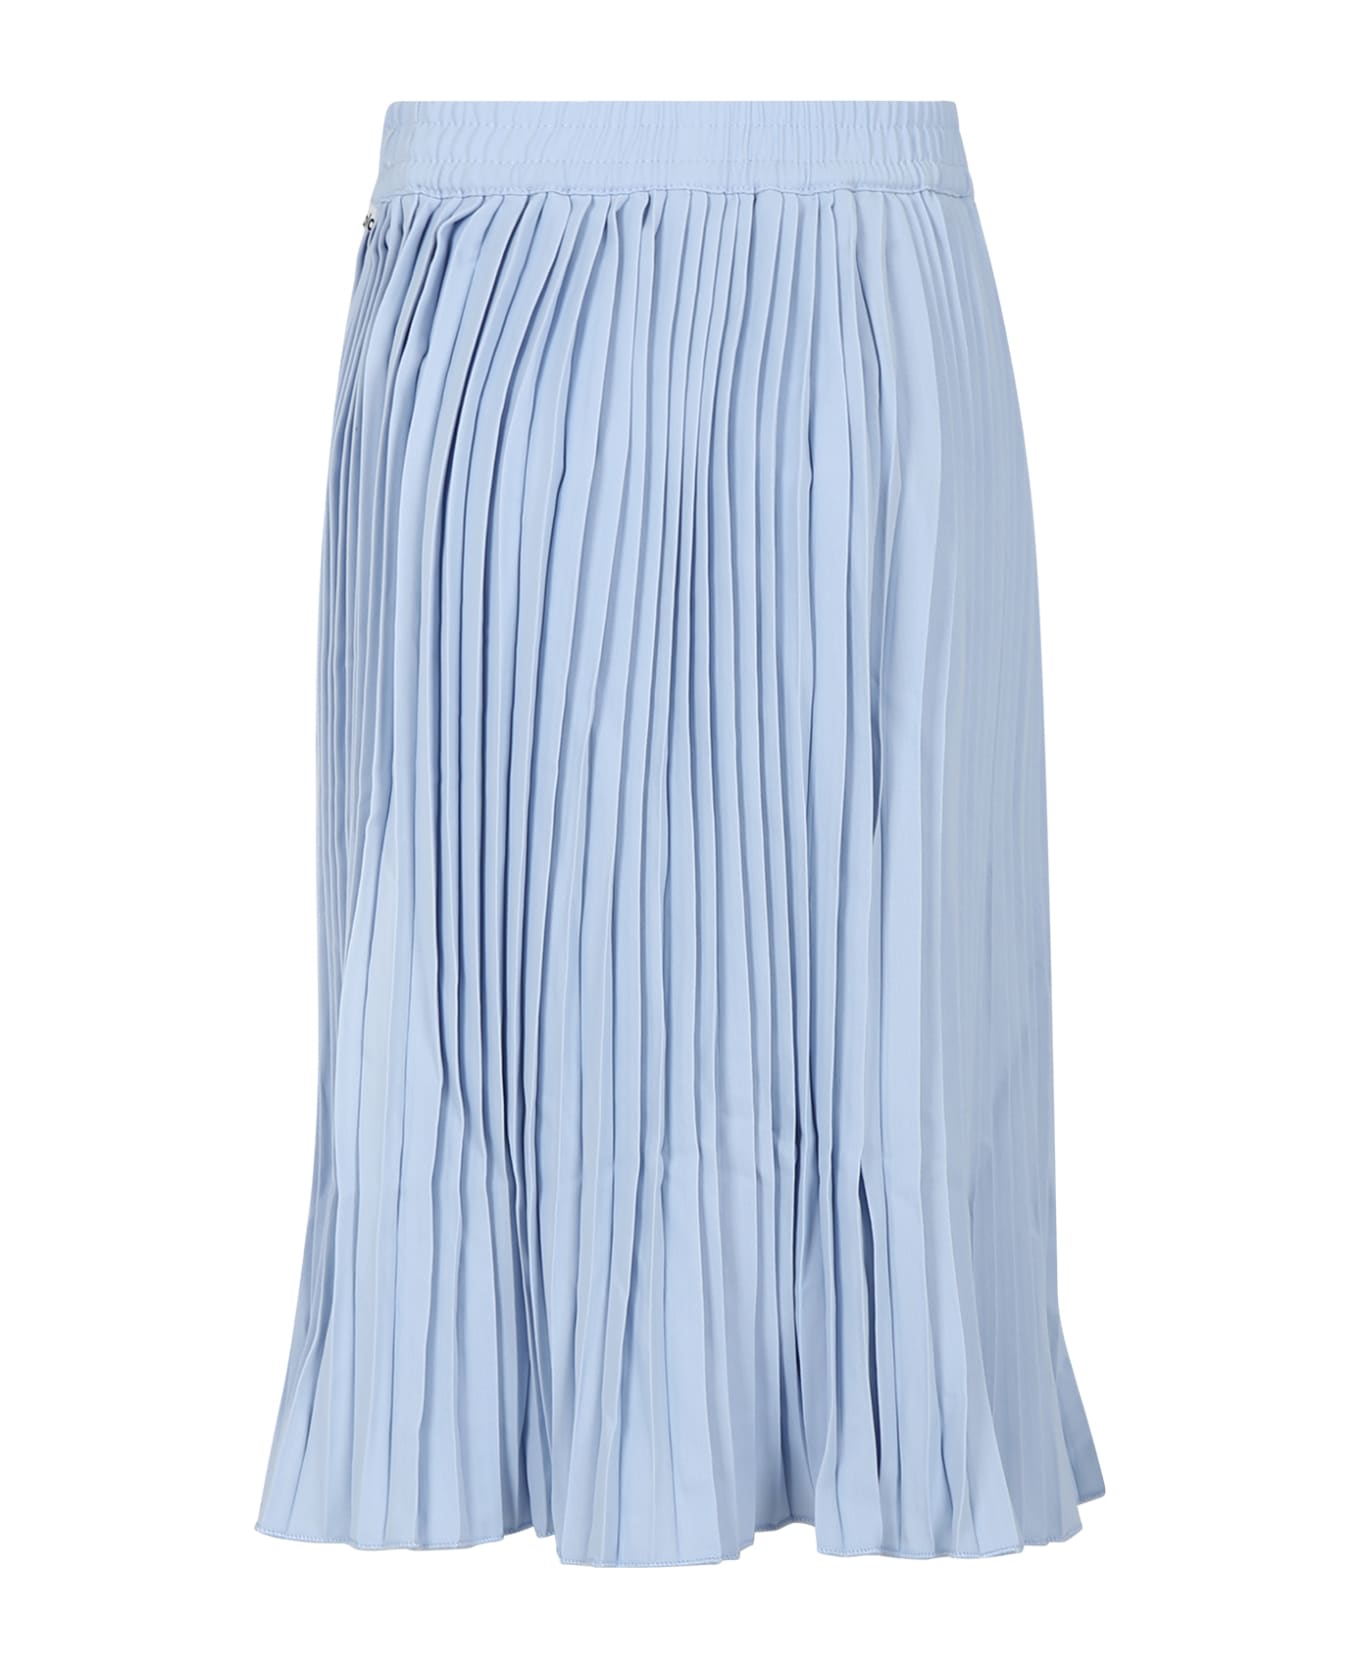 Molo Light Blue Casual Skirt Backa For Girl - Light Blue ボトムス